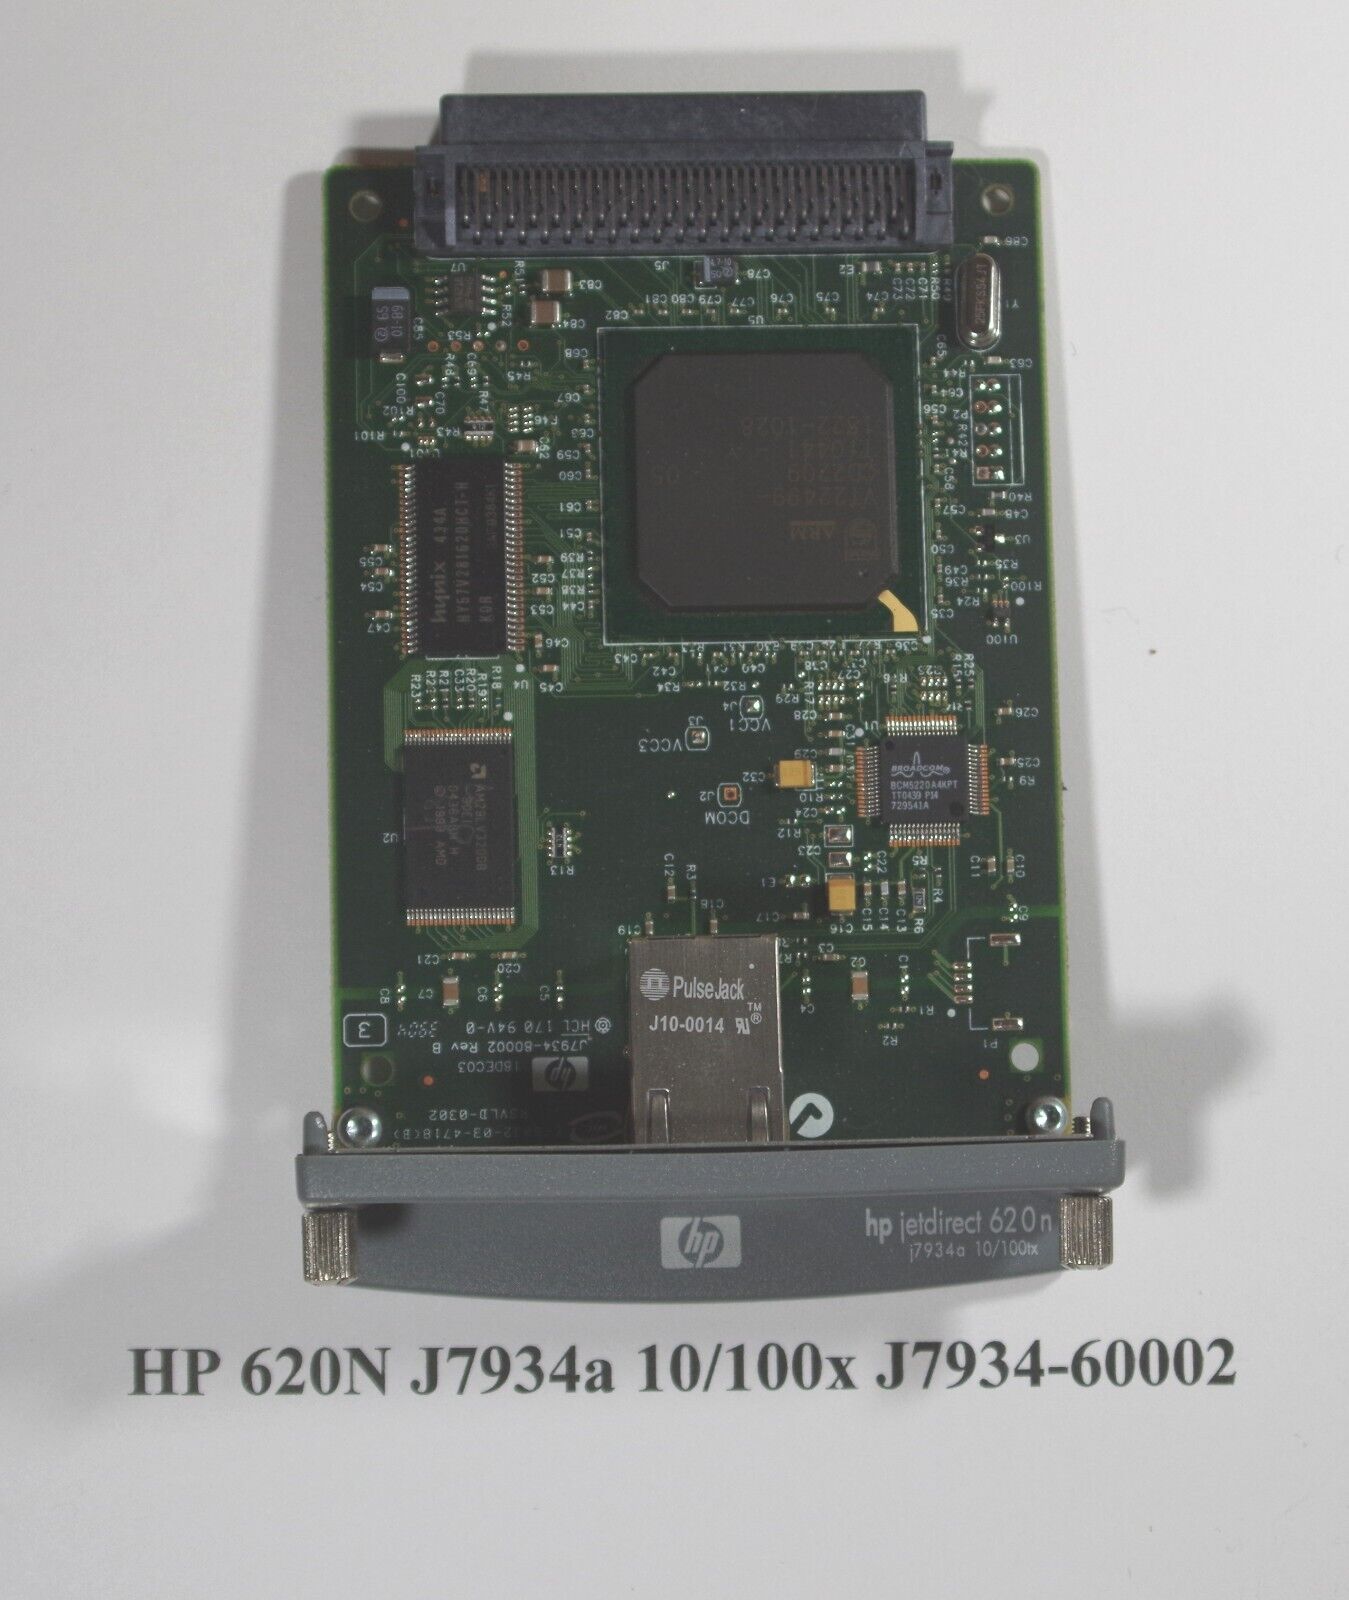 HP directjet 620N J7934G J7934-60012 Card